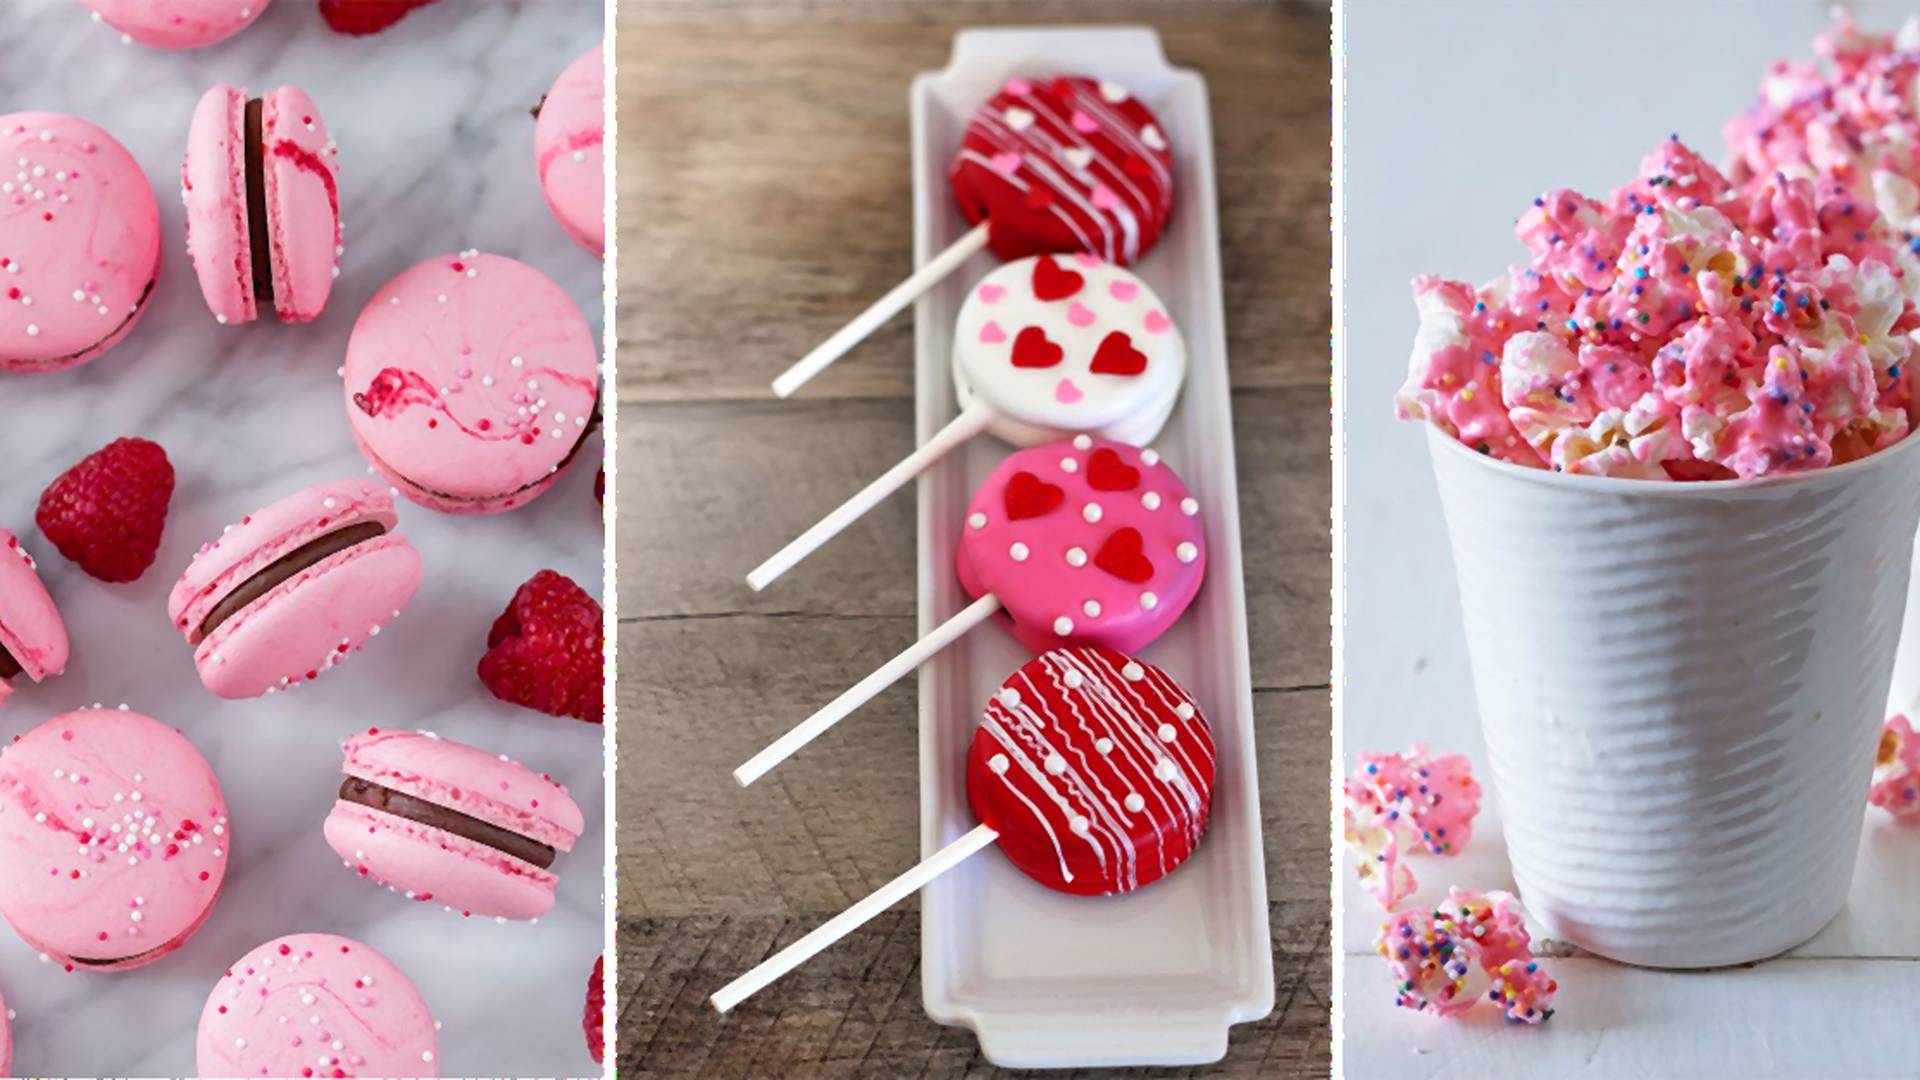 Priprav svojej polovičke niečo originálne: 10 tipov na sladké valentínske dobroty